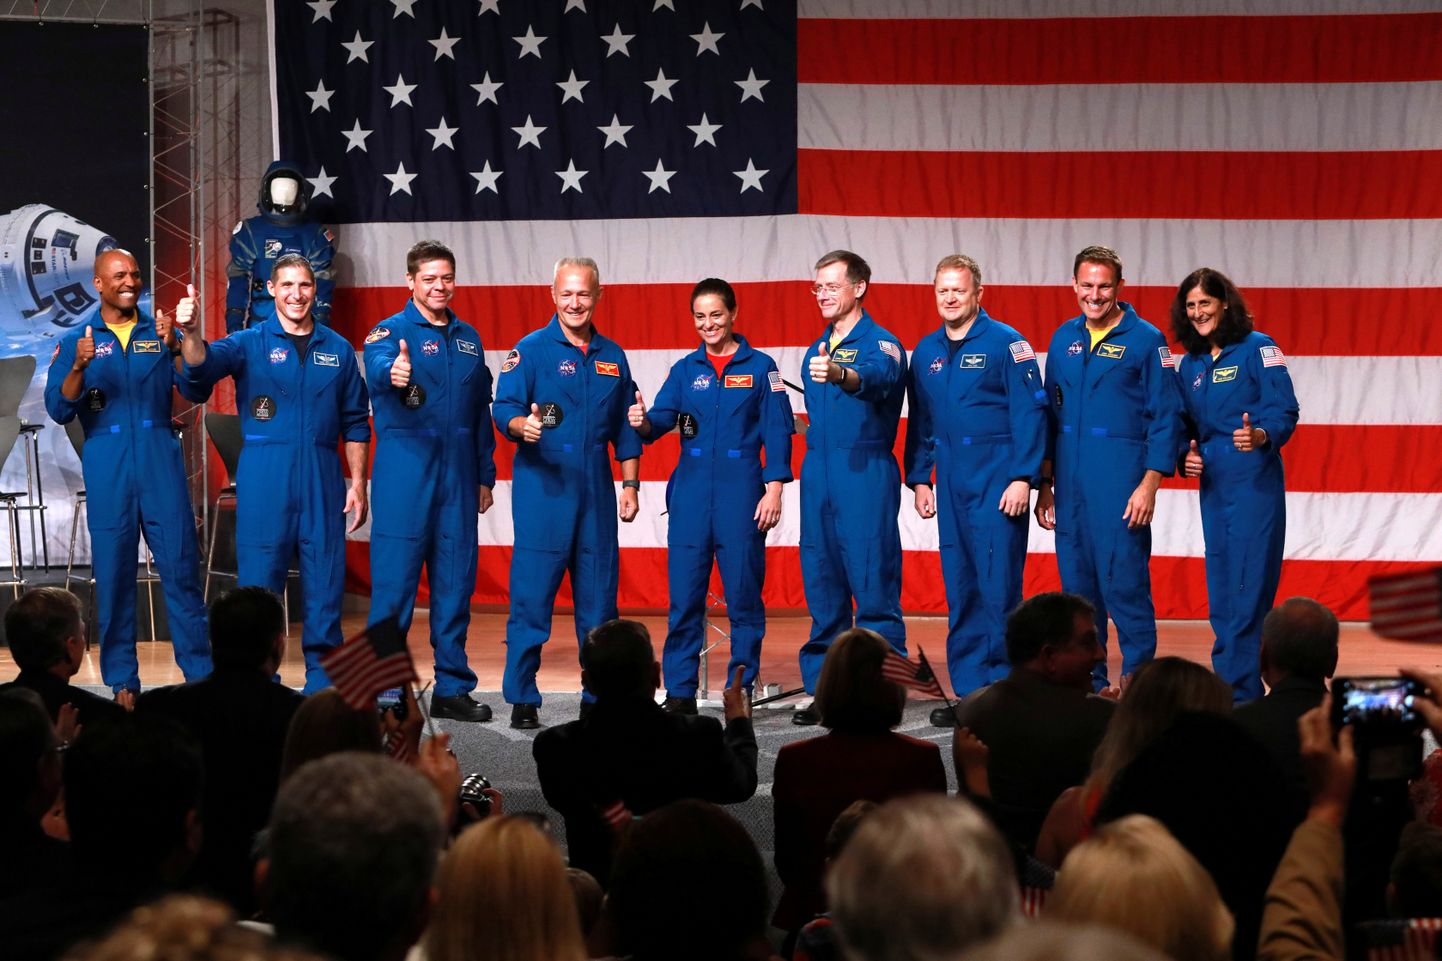 NASA avalikustas üheksa astronaudi nimed, kes lendavad järgmisel aastal orbiidile uute kosmoselaevadega.